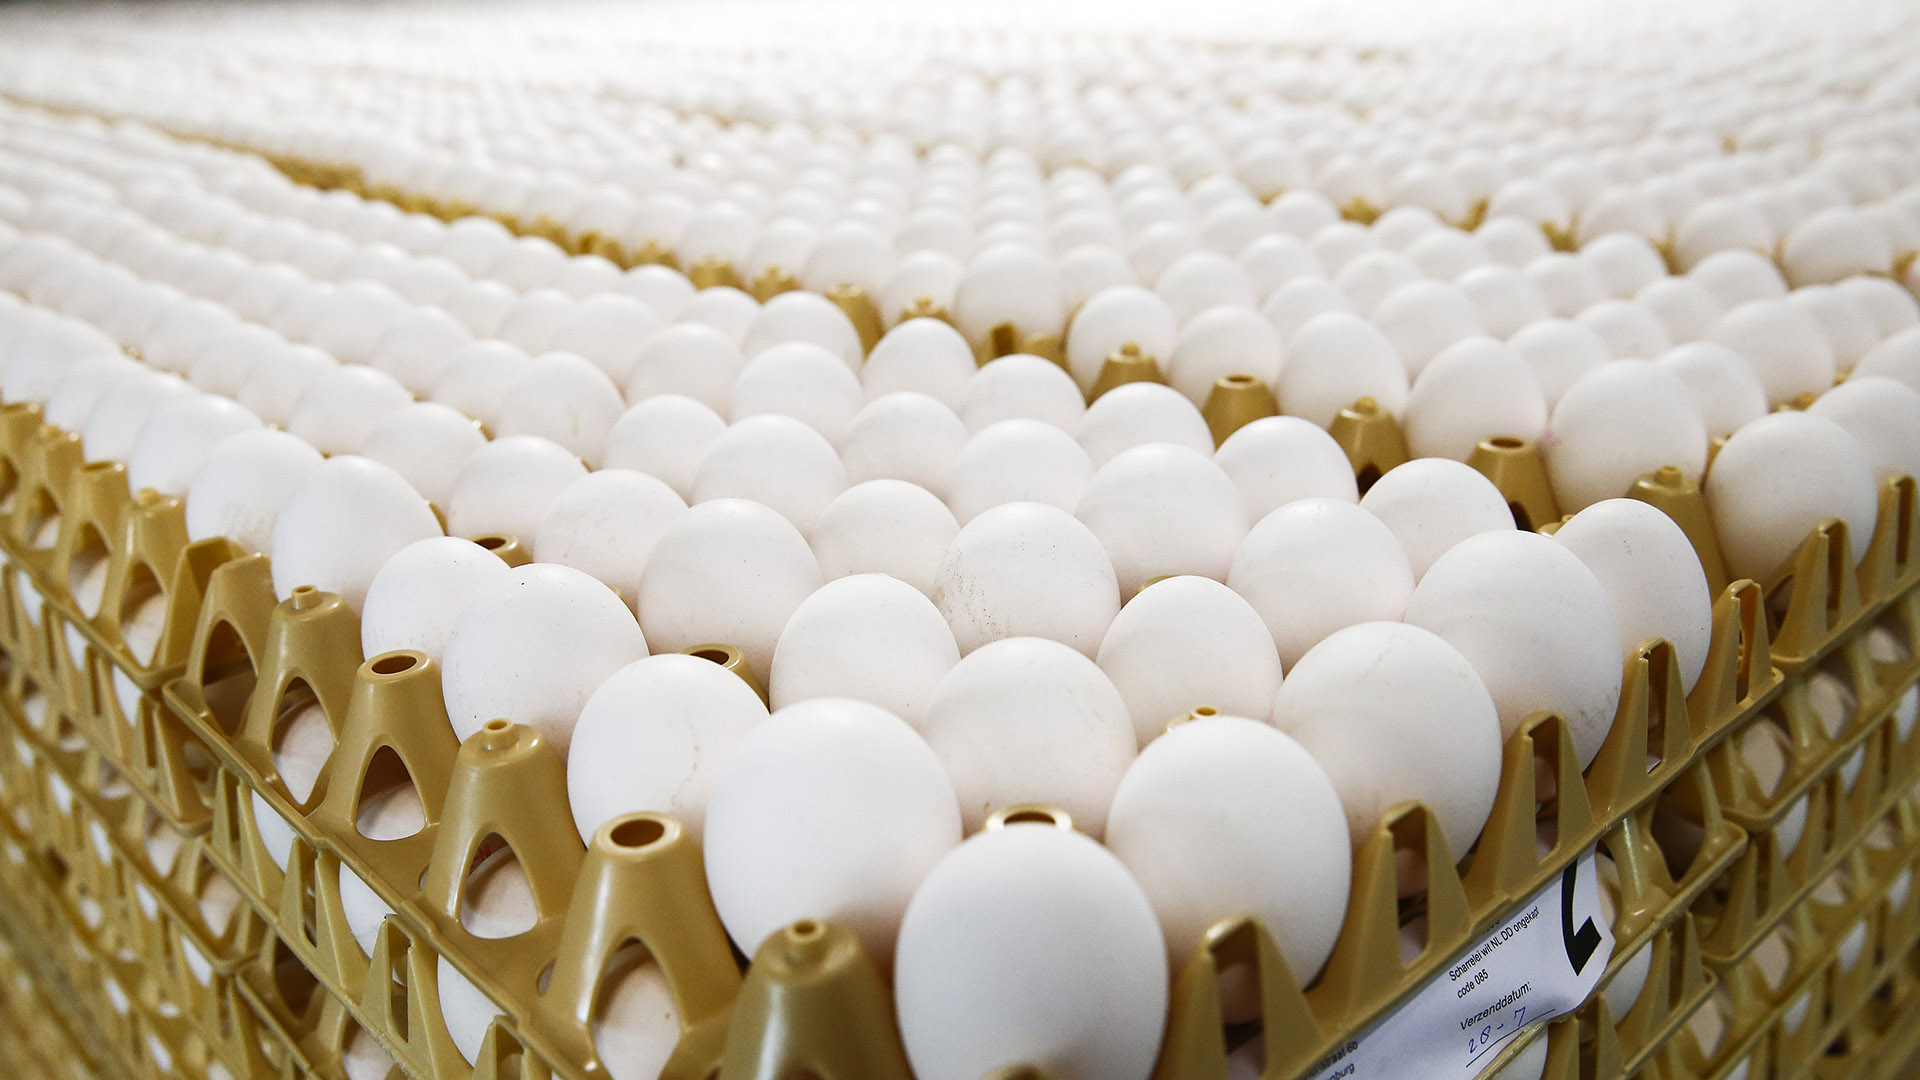 Los exportadores de aves y huevos fértiles y/o frescos que deseen percibir la ayuda económica del gobierno deberán cumplir con una serie de requisitos